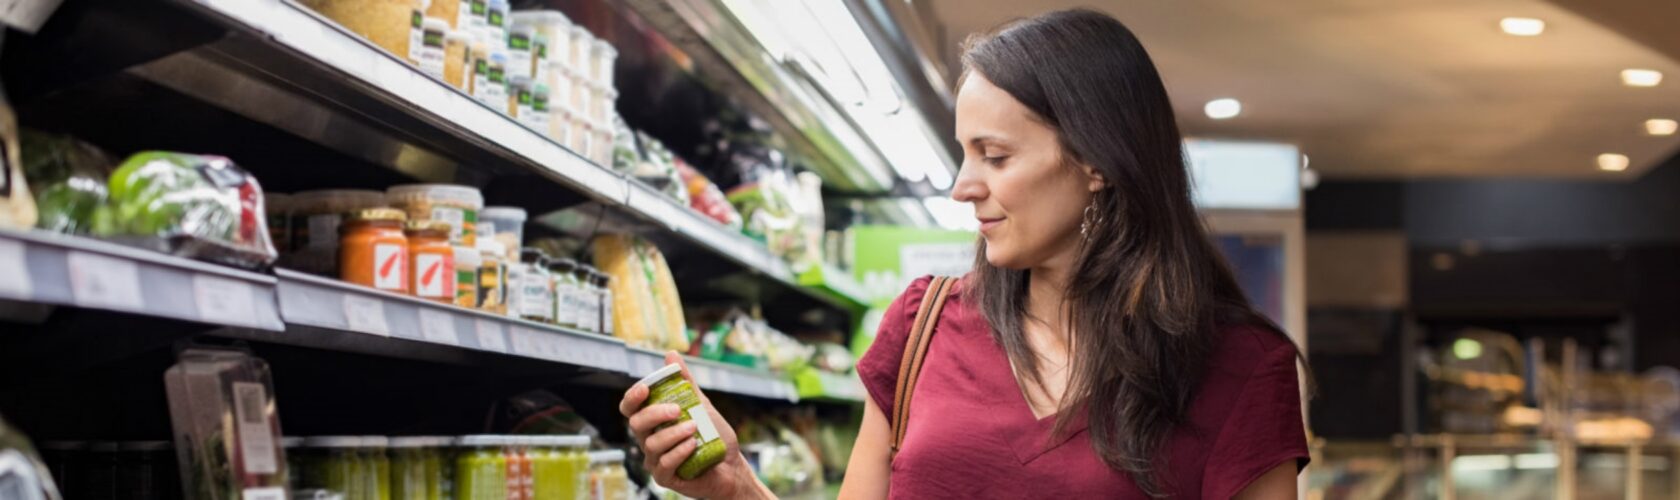 Beeld: vrouw bekijkt product uit het supermarktschap